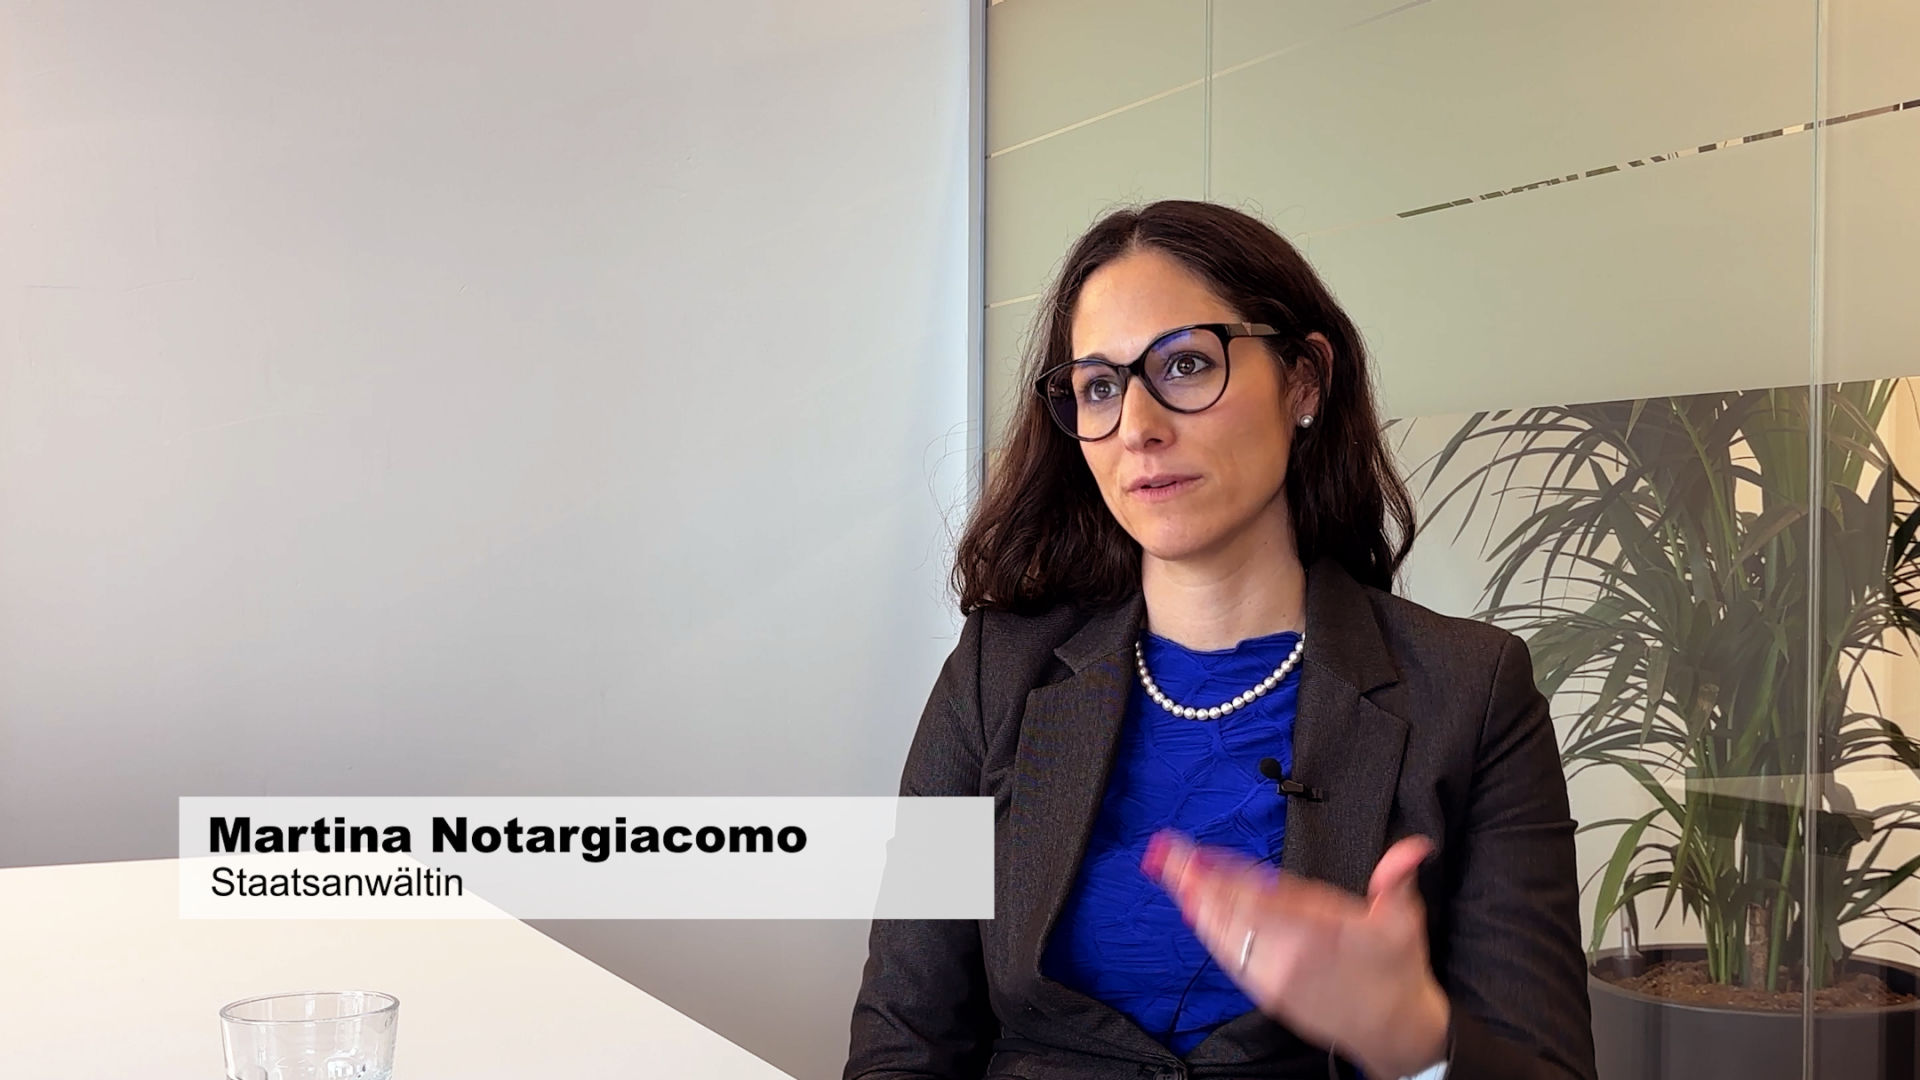 Martina Notargiacomo arbeitet bei der Staatsanwaltschaft Winterthur/Unterland als Staatsanwältin. Im Interview erklärt sie, wie die Staatsanwaltschaft bei der Untersuchungshaft vorgeht.